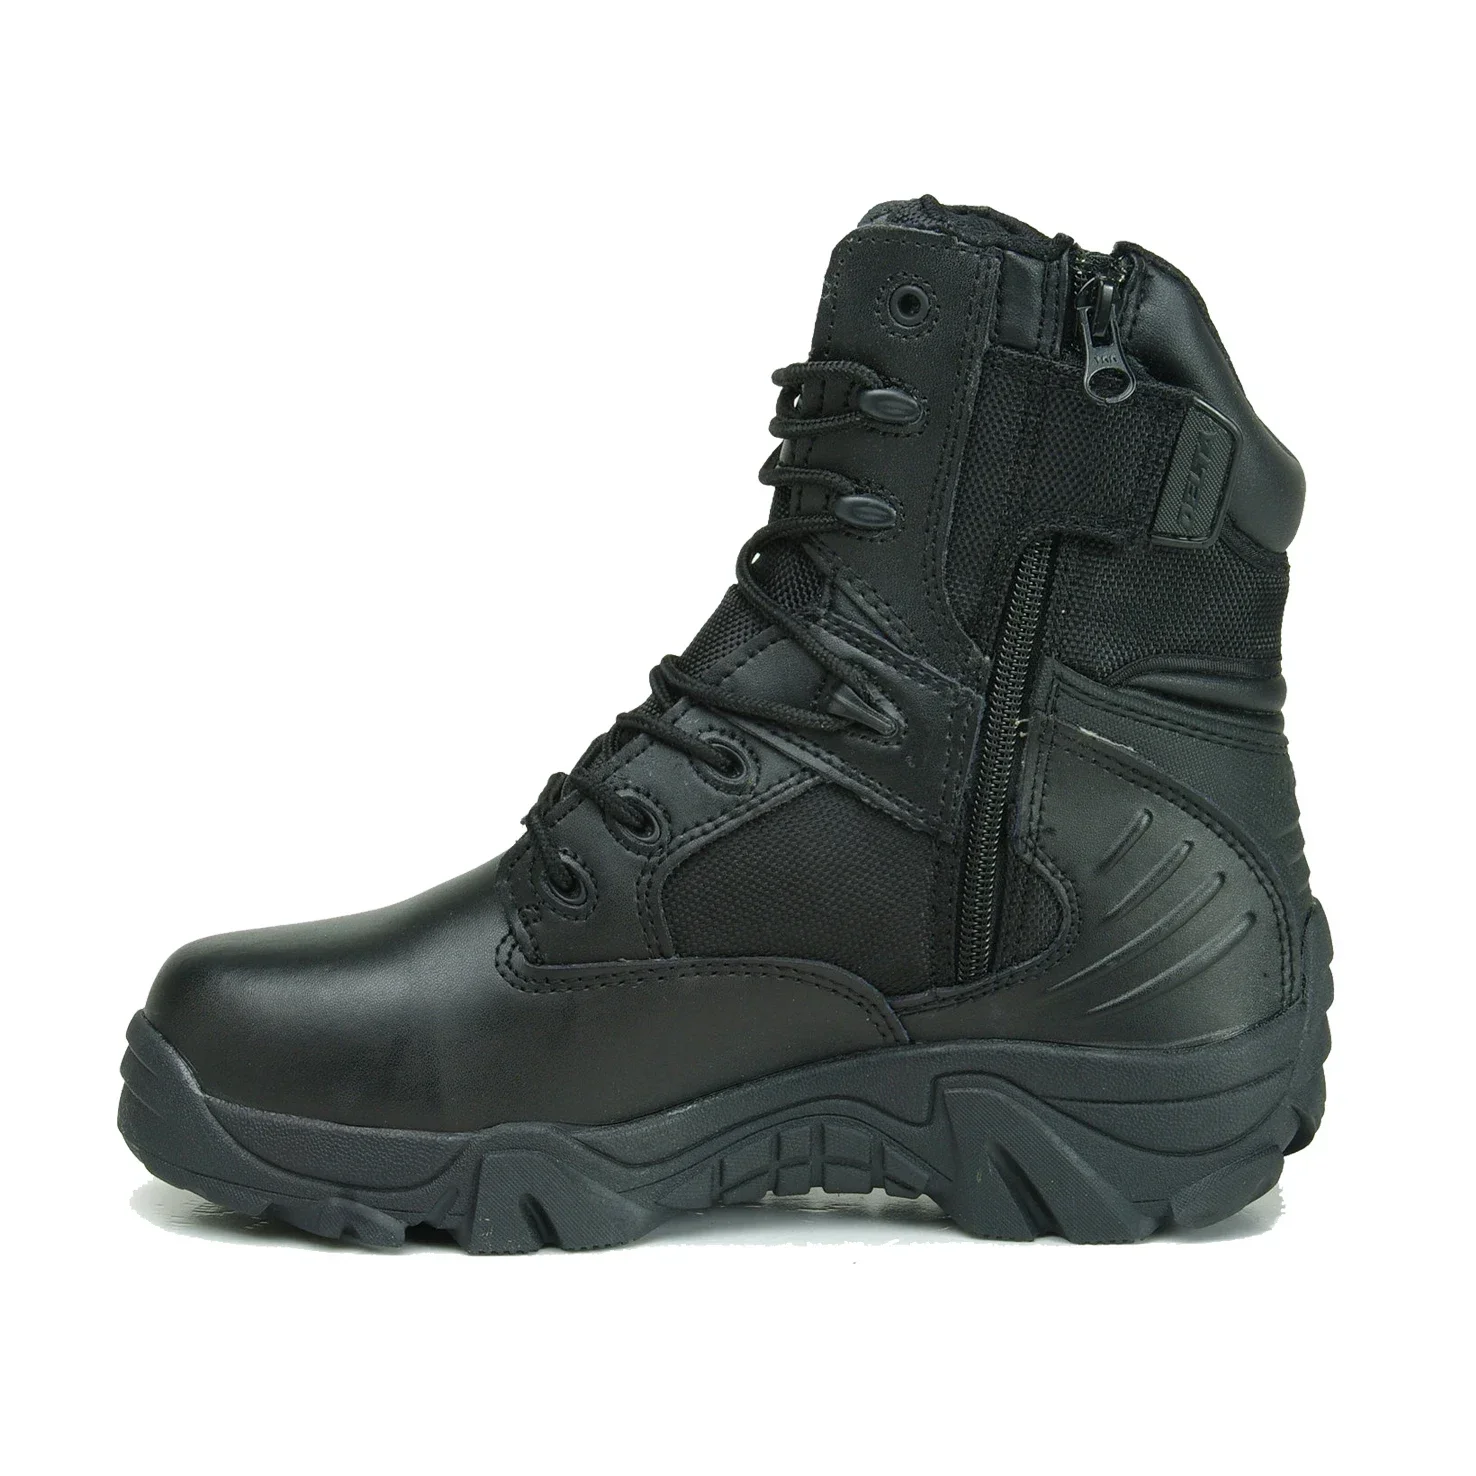 Ботинки мужские Тактические Кожаные, ботинки в стиле милитари, дета, спецсилы, пустынные, рабочие ботинки, Осень-зима